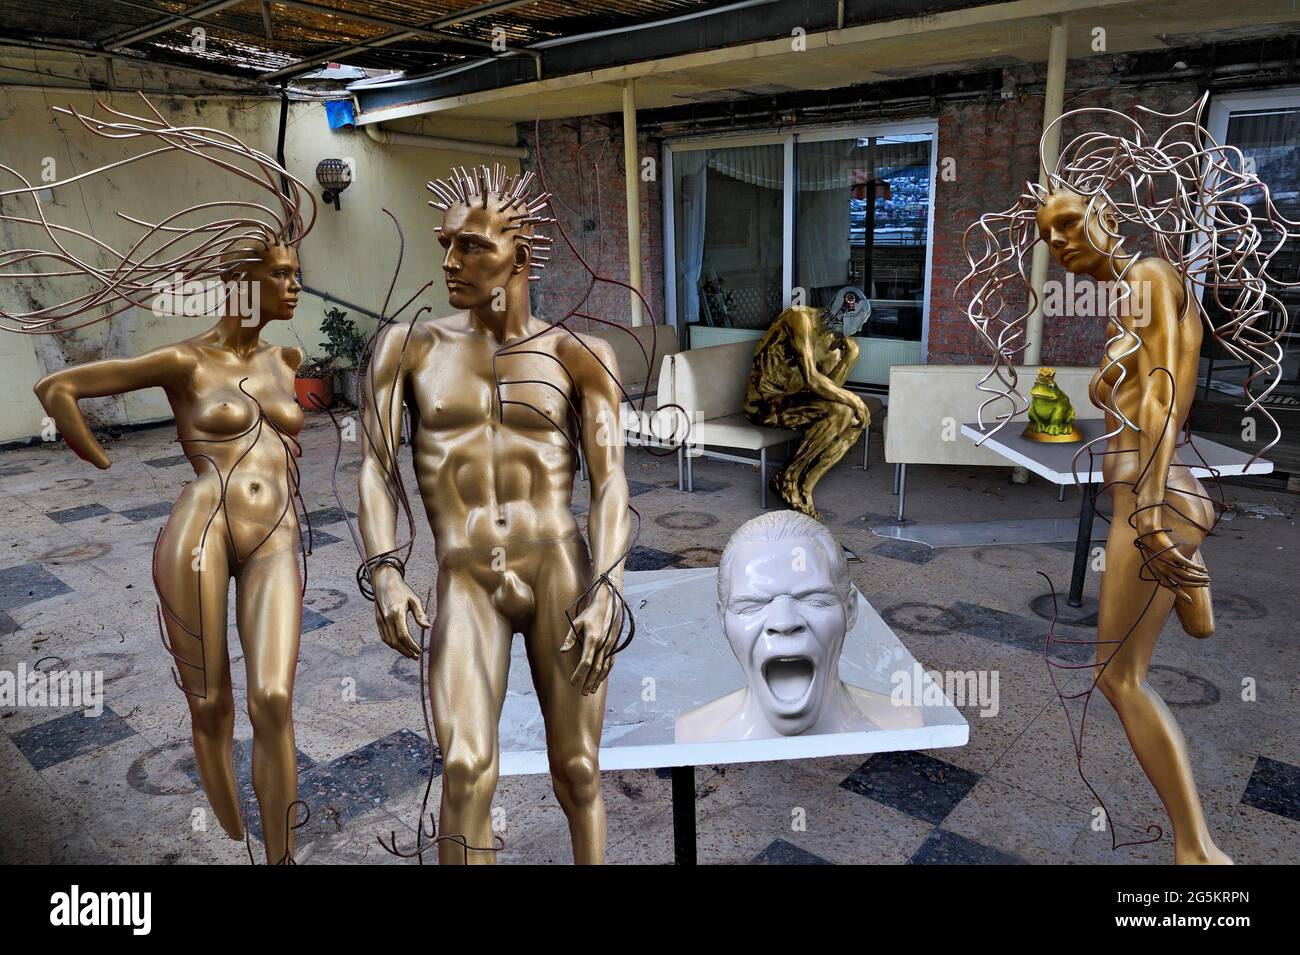 FOTOMONTAGE, les gardiens des lieux perdus, figurines métalliques, Allemagne, Europe Banque D'Images